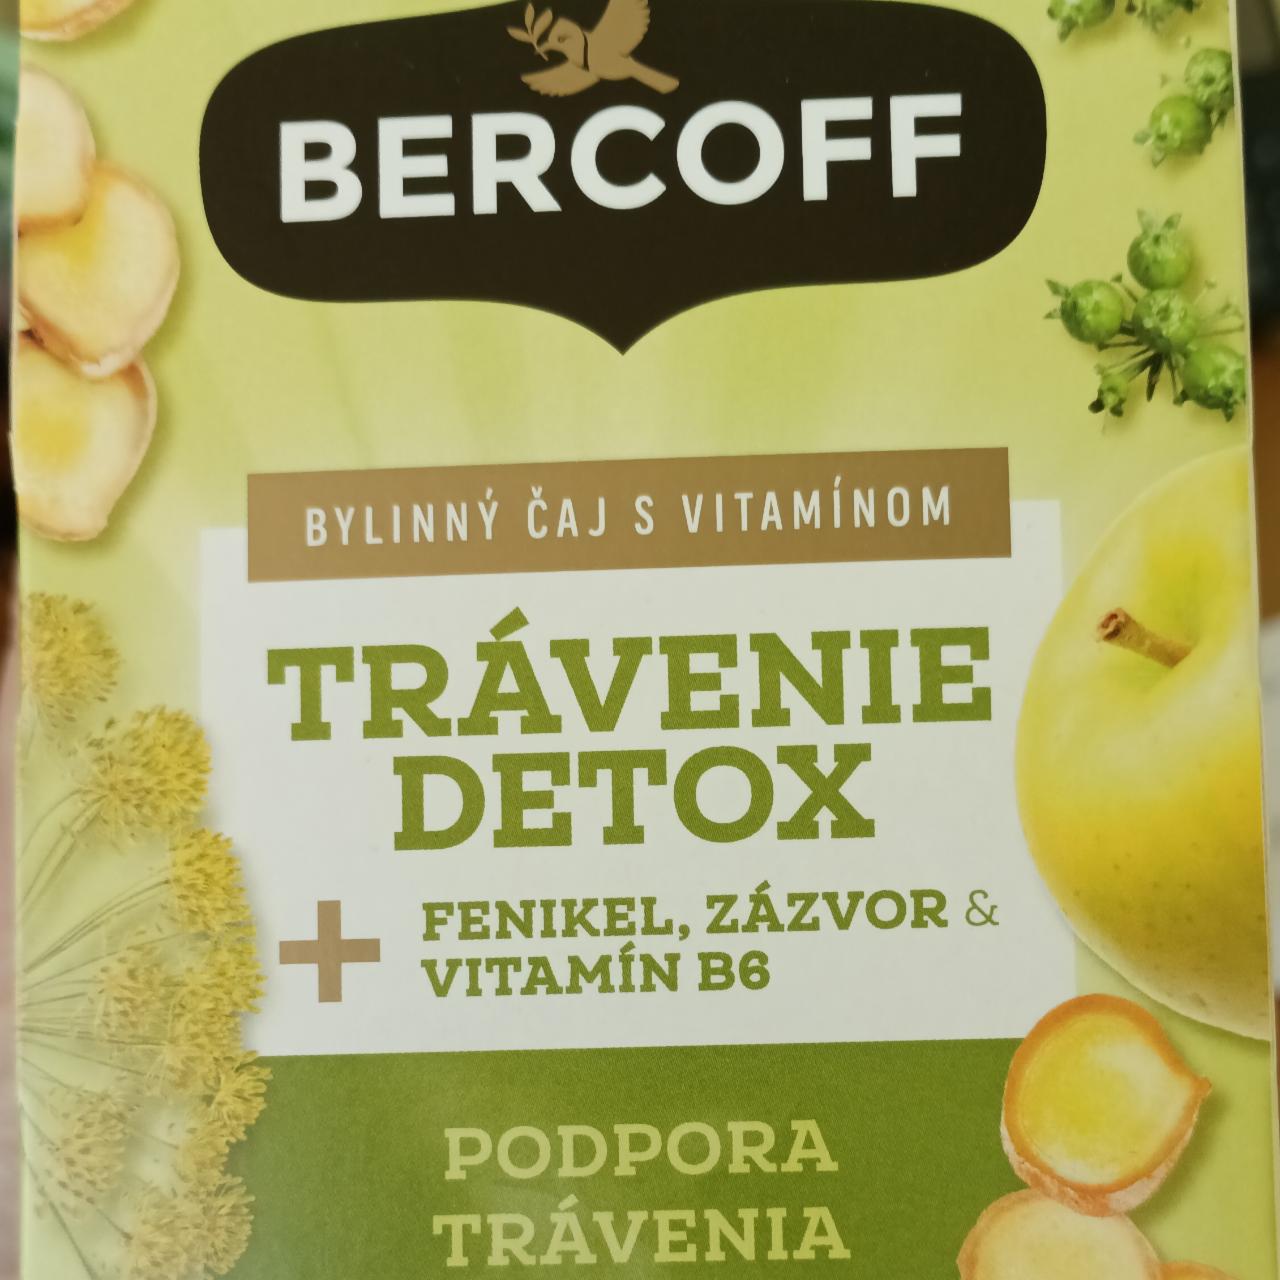 Fotografie - Bylinný čaj s vitamínom trávenie detox Bercoff